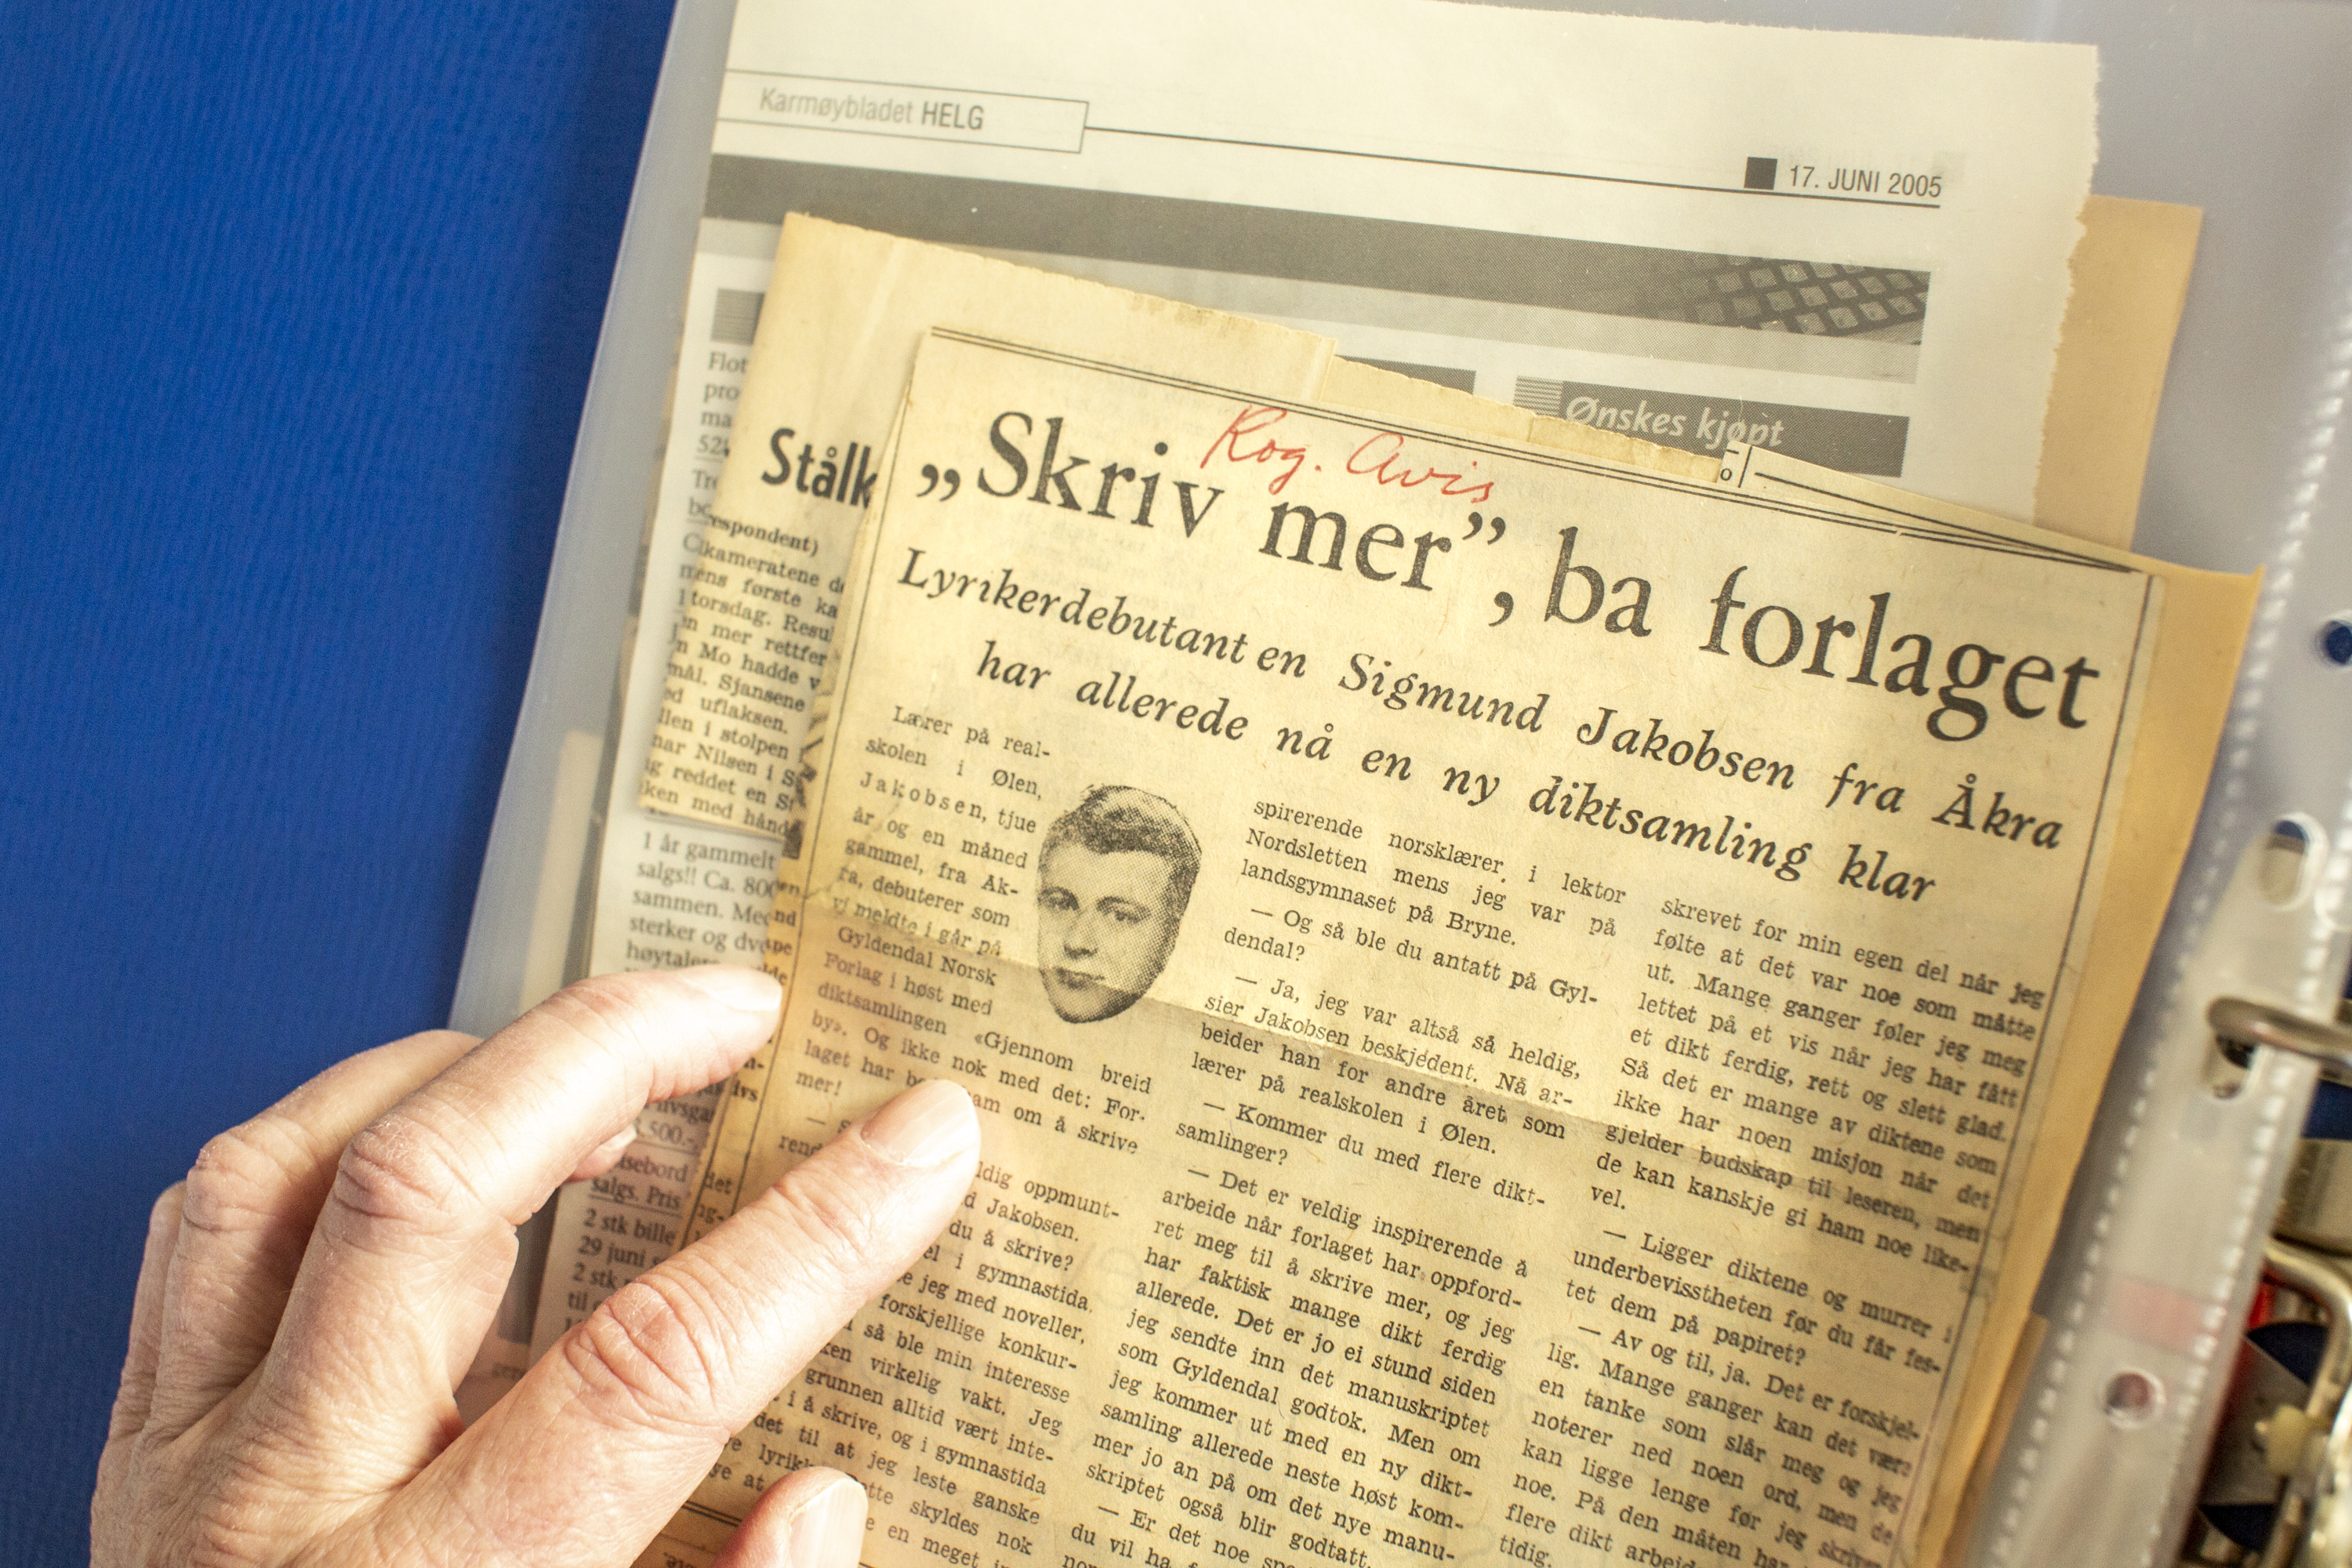 22.03.22 Kolbotn, Norge. Sigmund Jakobsen fotografert i hjemmet sitt ifb. med at han ble den første vinneren av Tarjei Vesaas' debutantpris i 1964, men ga ikke ut mer siden